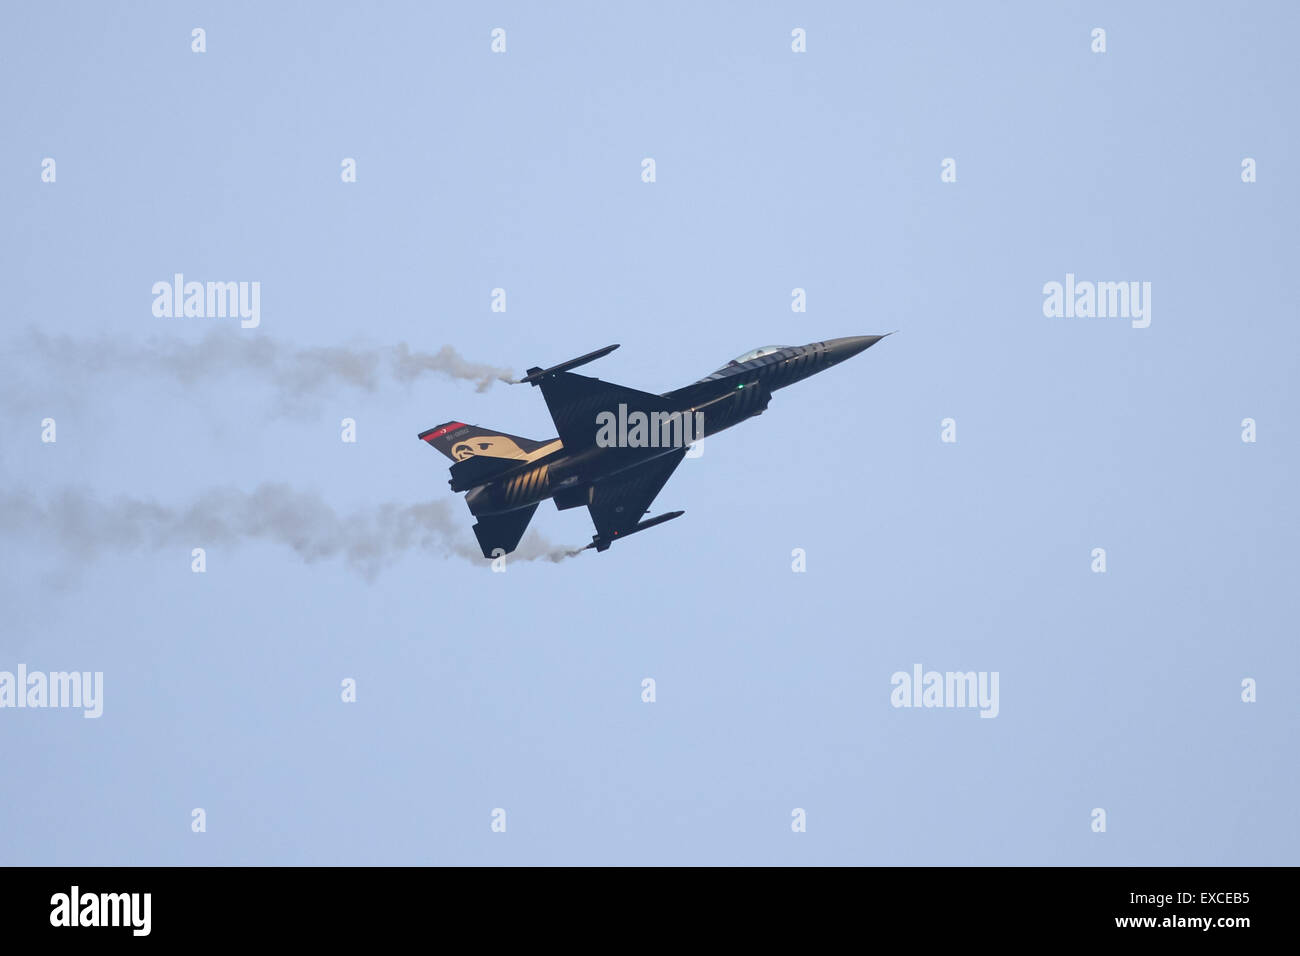 ISTANBUL, Turchia - 17 Maggio 2015: Turkish Air Force Solo Display acrobazia assolo del Team Turk esegue. Solo Turk aereo è un F-16 Foto Stock